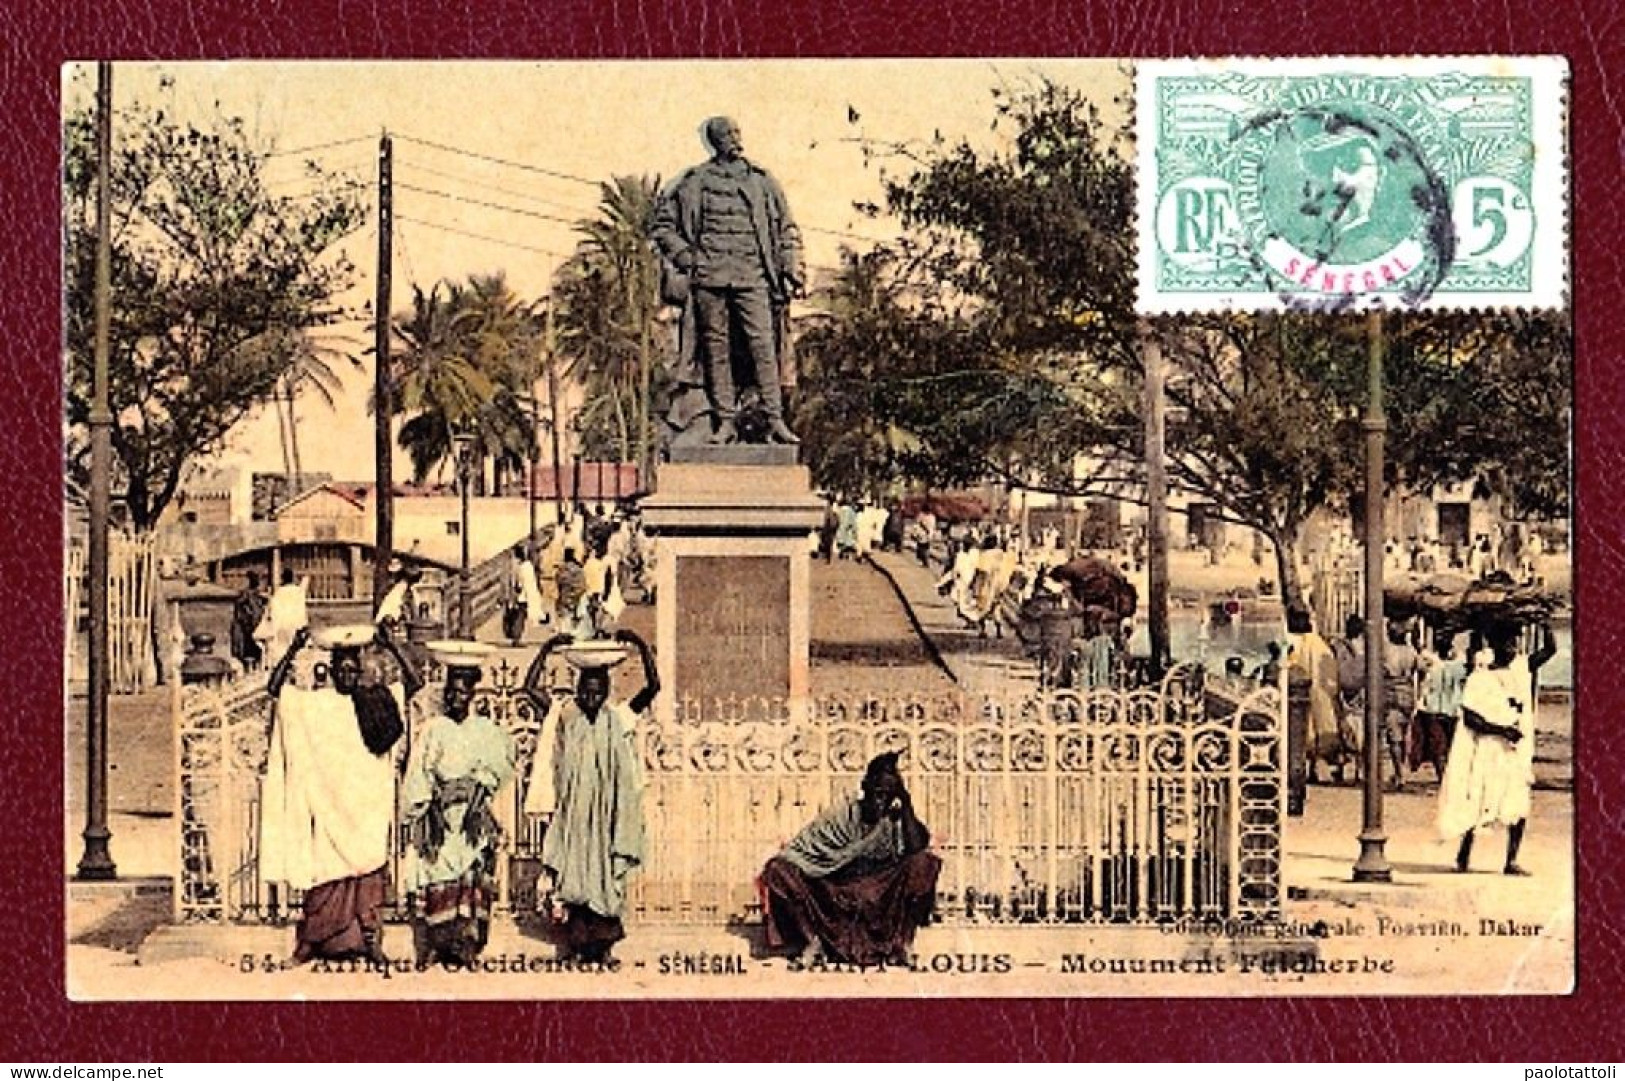 Senegal, S. Luis. Monument Feldherbe. Coll. Generale Fortier, Dakar. No. 54. - Sénégal